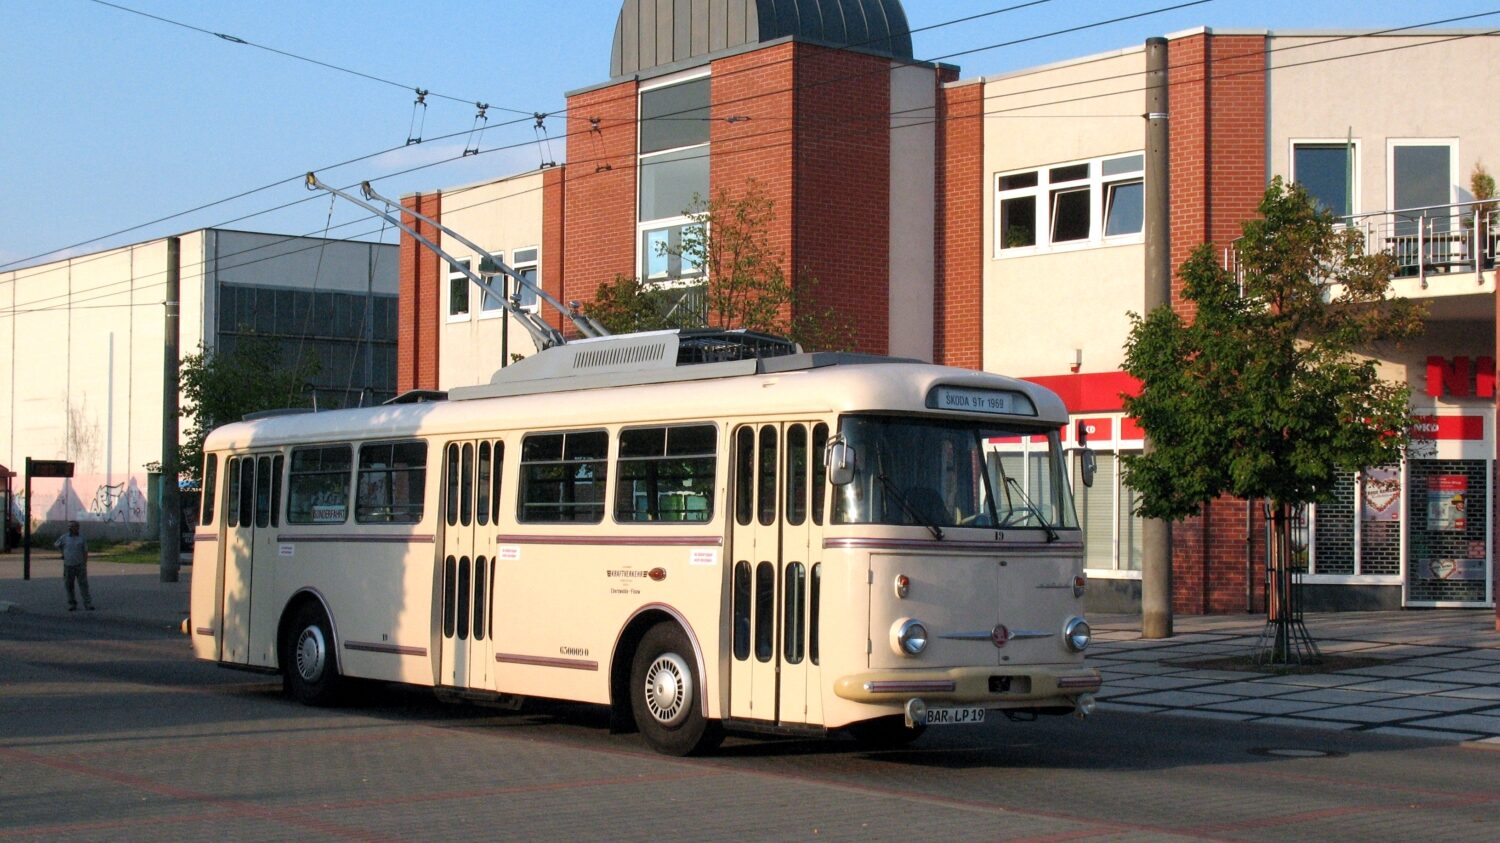 V Eberswalde jezdily stejně jako v dalších východoněmeckých městech trolejbusy Škoda. Ve sbírce místního spolku je uchován jeden vůz Škoda 9 Tr i 14 Tr. (zdroj: Flickr; foto: tramfan239)